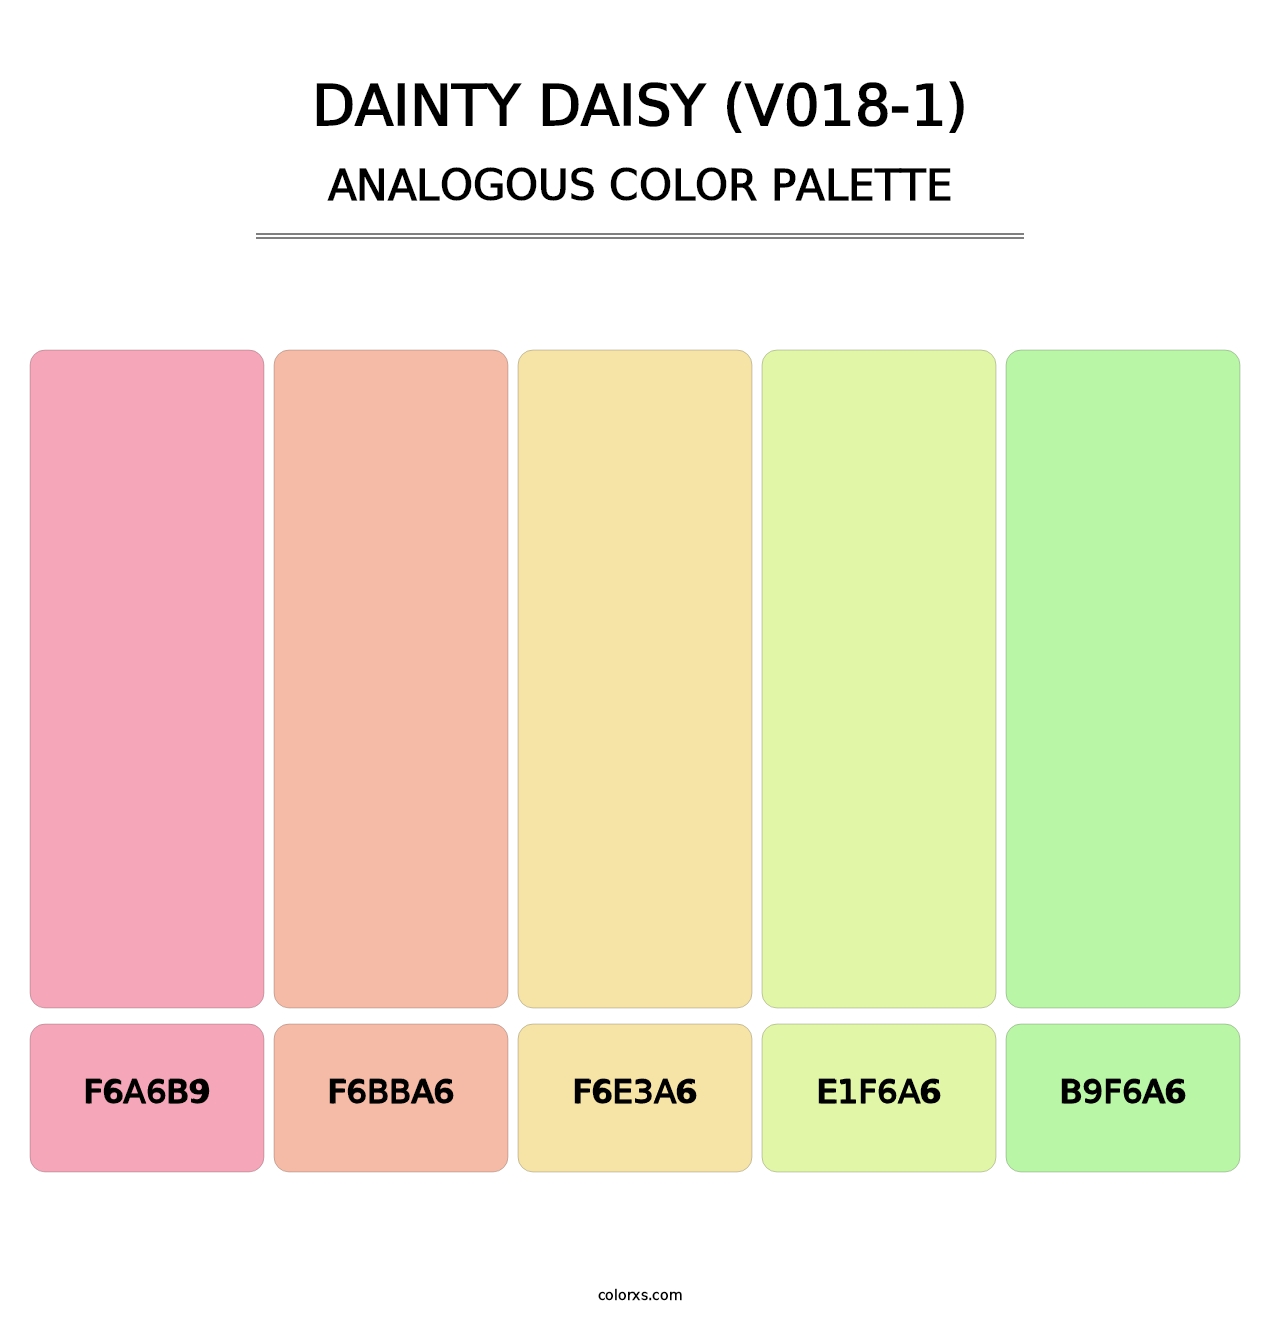 Dainty Daisy (V018-1) - Analogous Color Palette